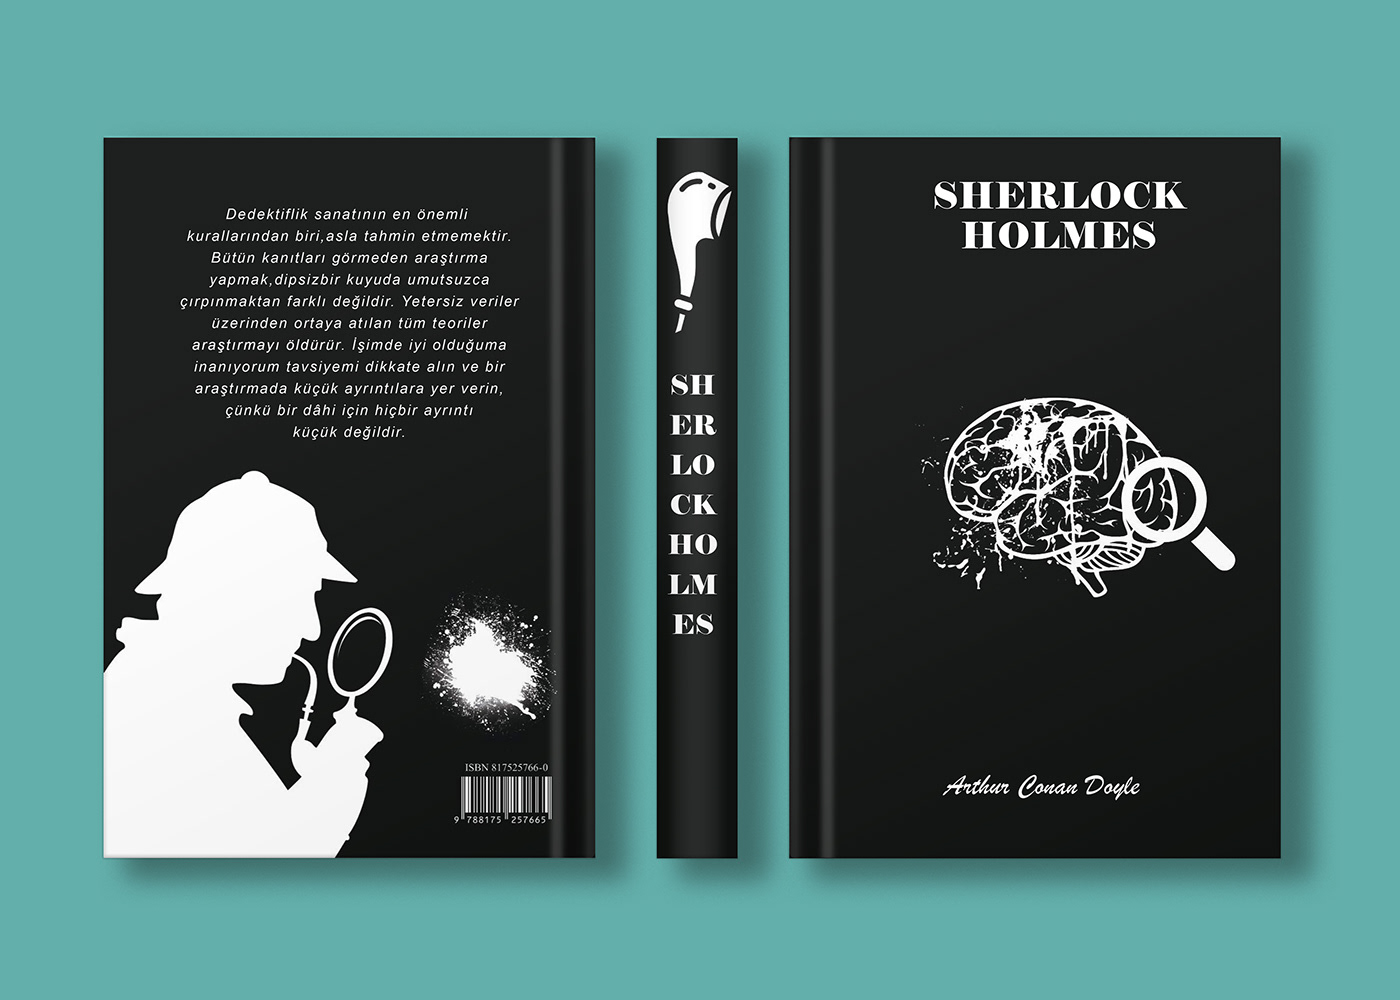 Book Cover Design book design books cover design design kapak tasarımı Kitap Kapağı Sherlock Holmes sherlock holmes book Sherlock Holmes Detective